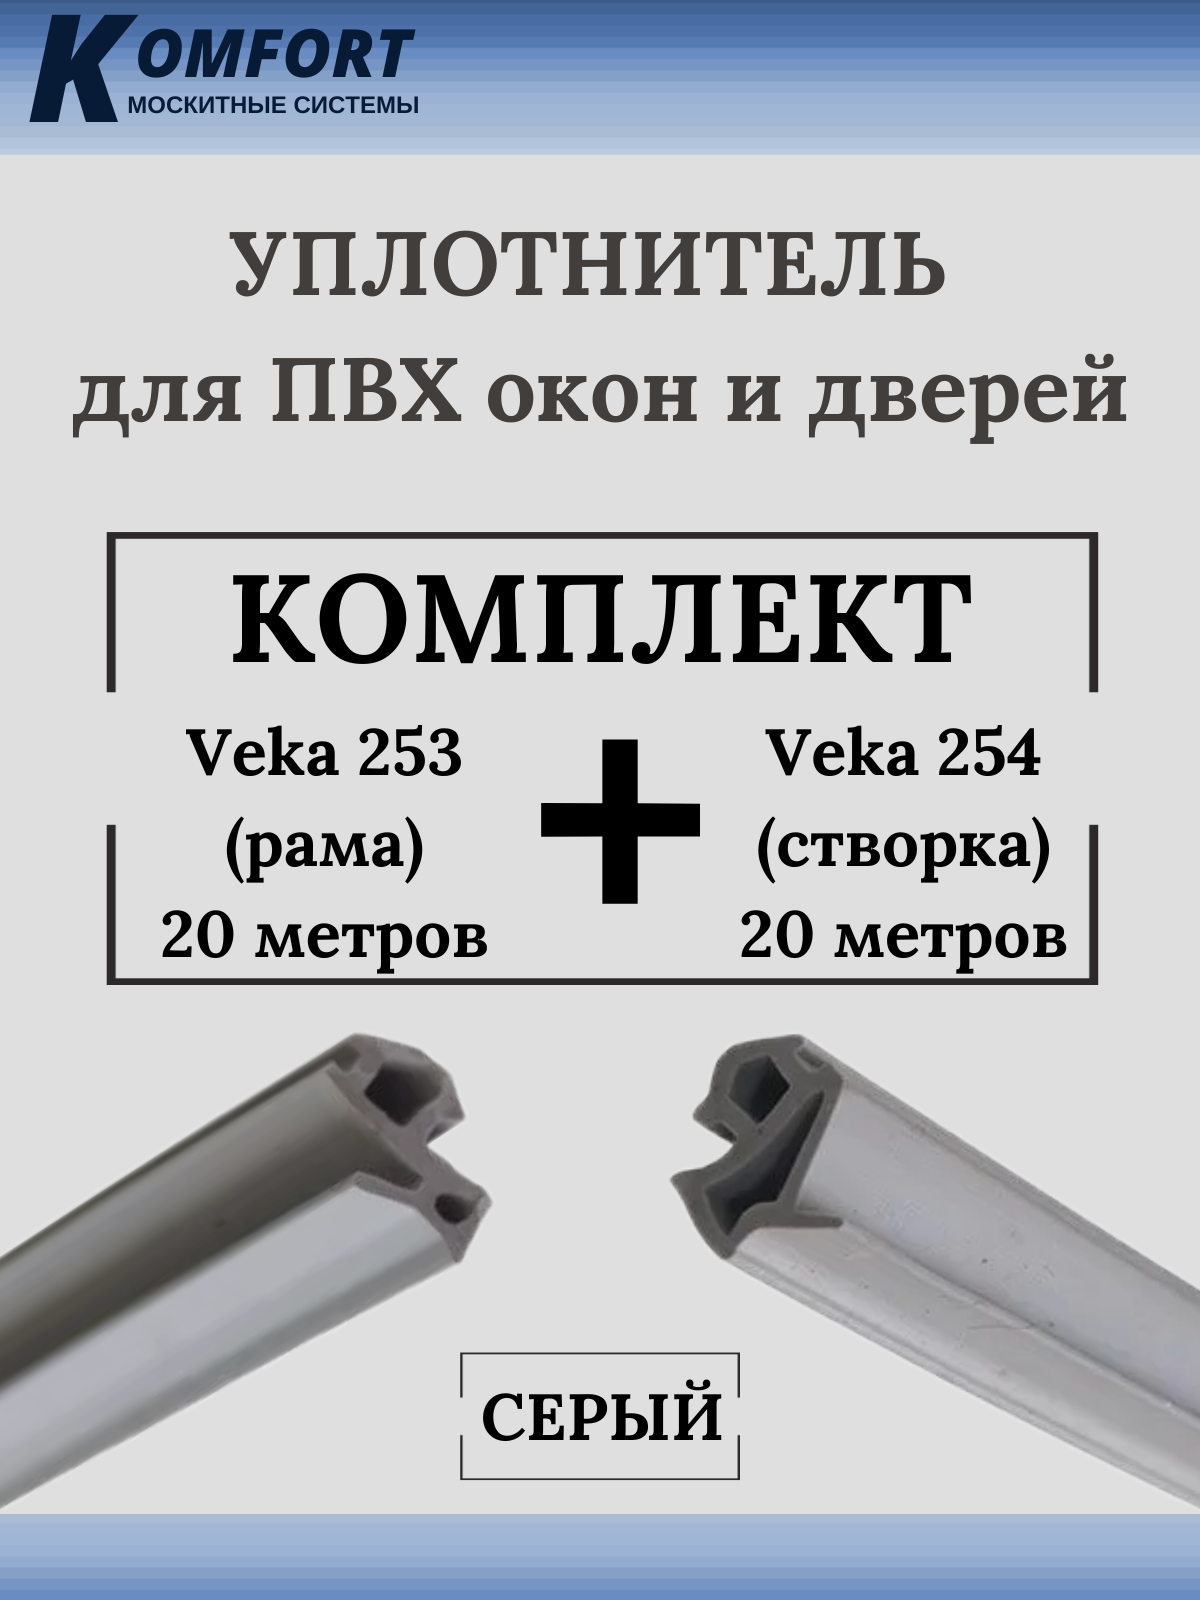 Уплотнитель для окон ПВХ VEKA 253 (рама) и VEKA 254 (створка) черный 40+40 м